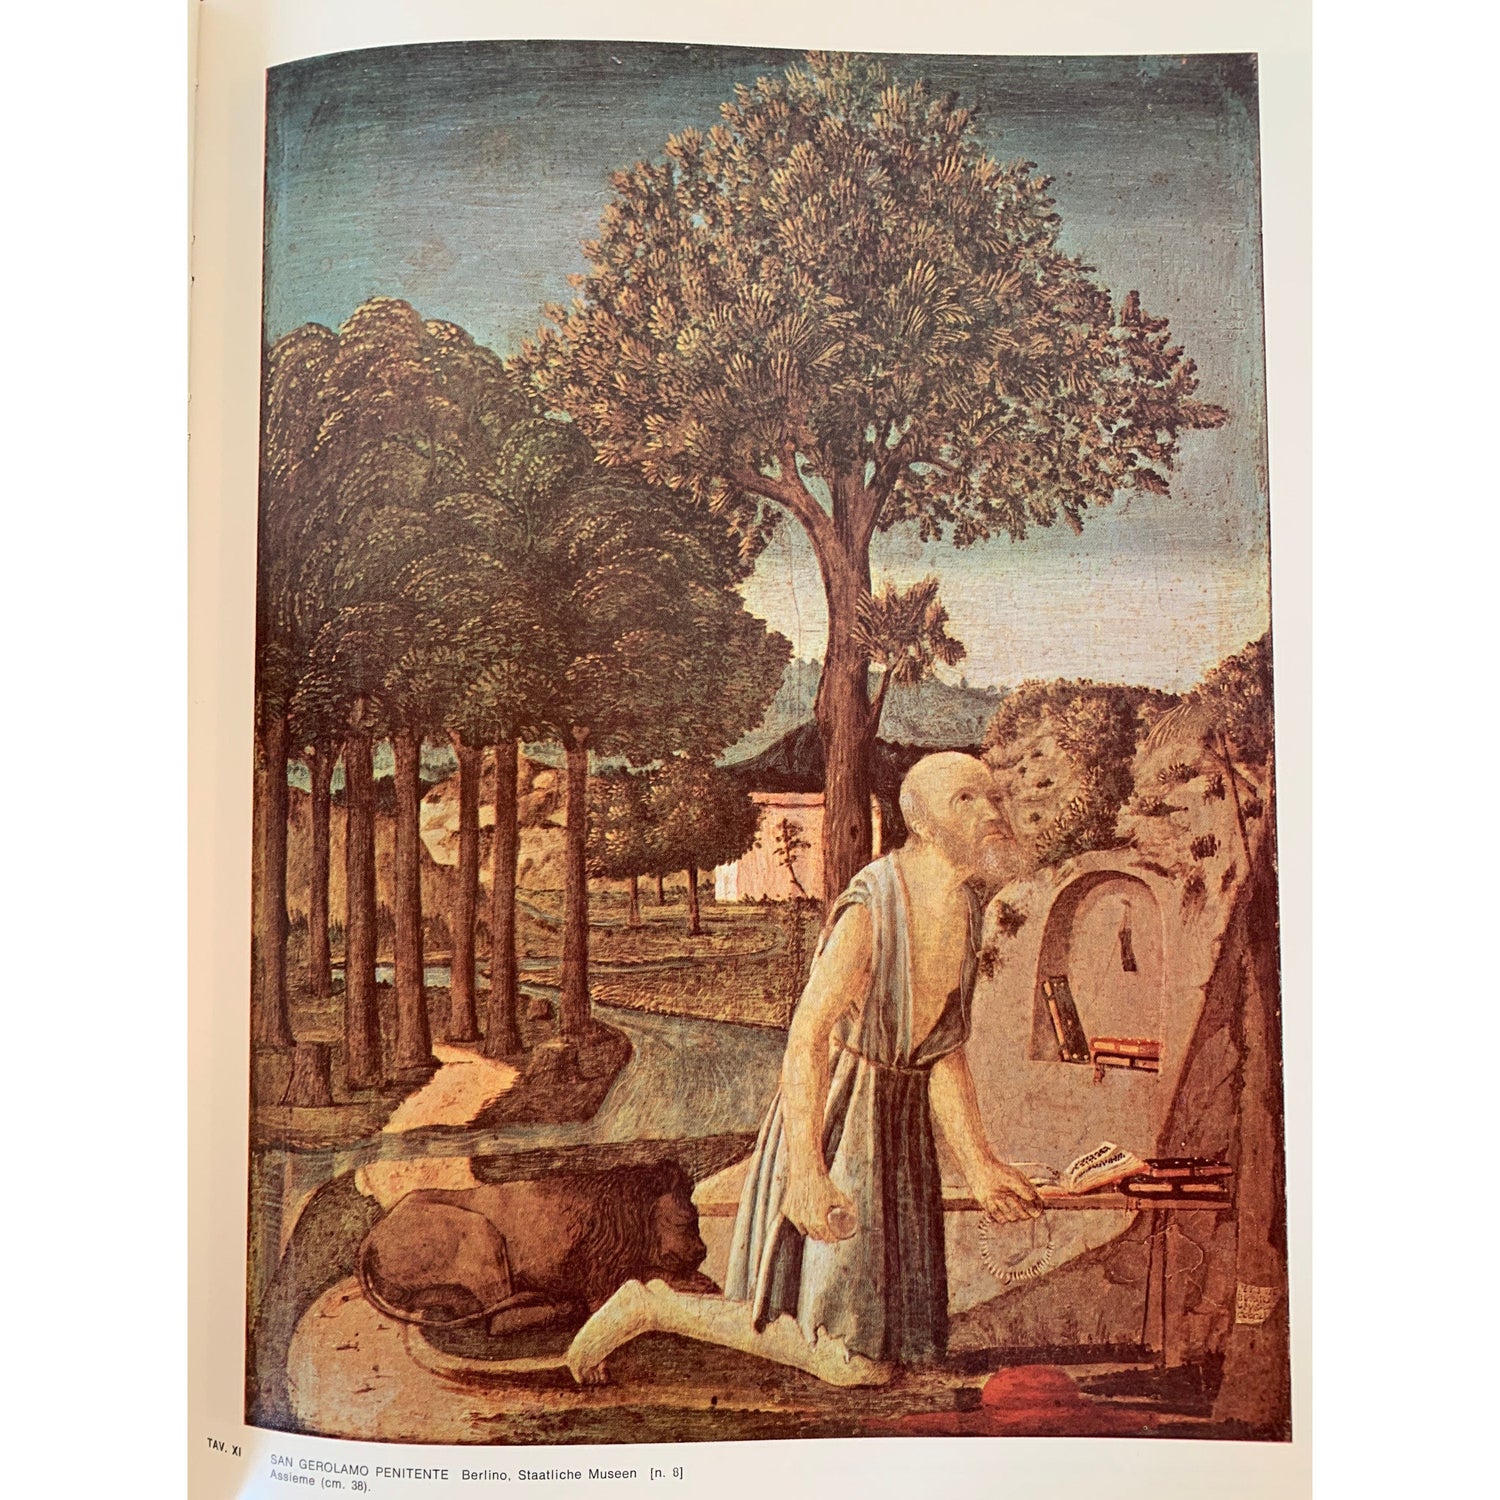 Italian High End Art Book Collection, L'Opera Completa di Duccio, Classici dell'Arte, 1969